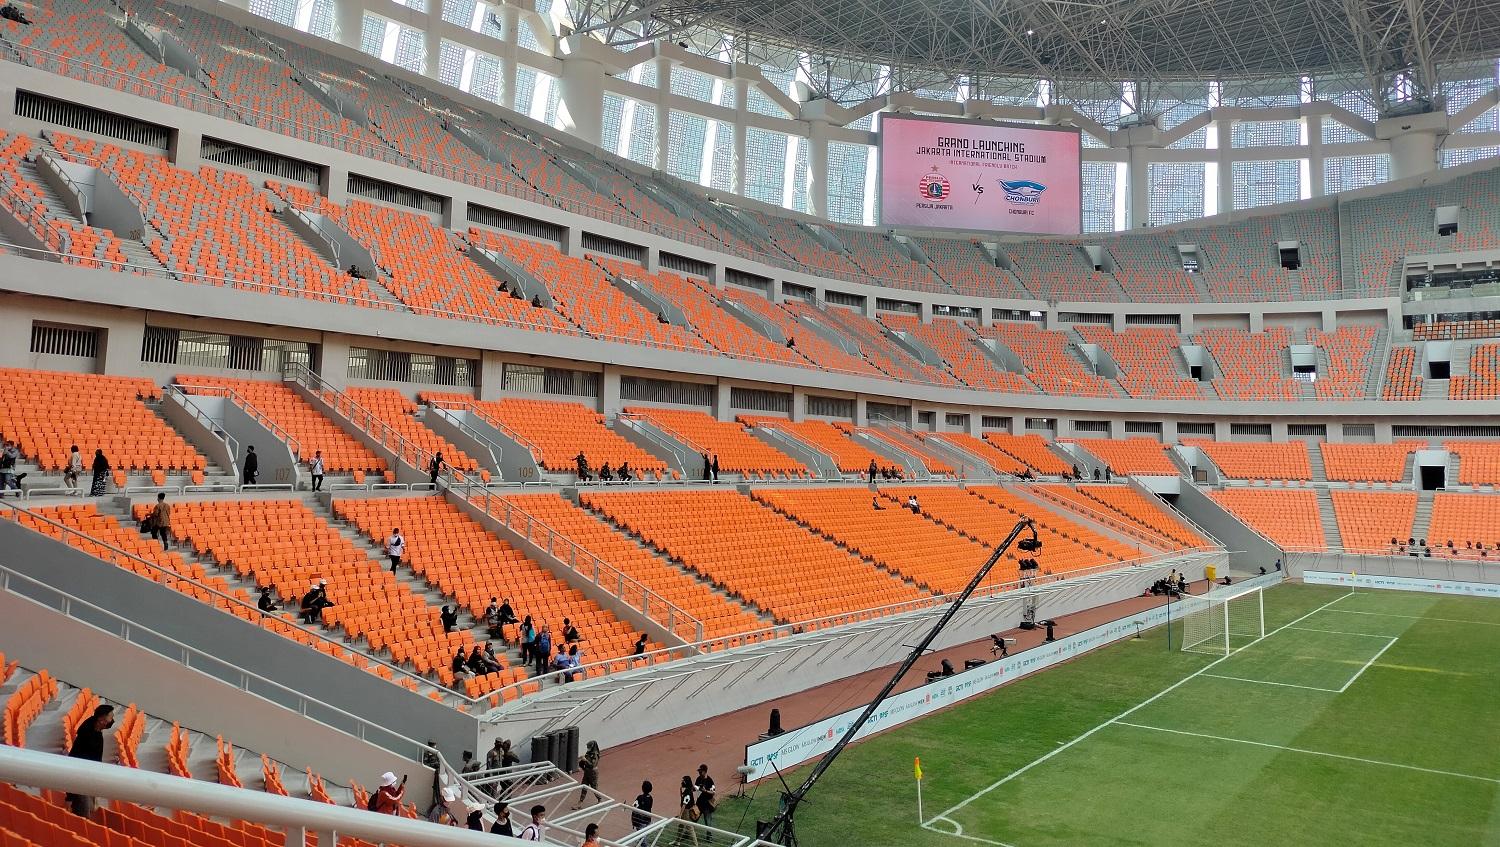 Tribun penonton dari Jakarta International Stadium (JIS) berkapasitas 82.000 penonton.